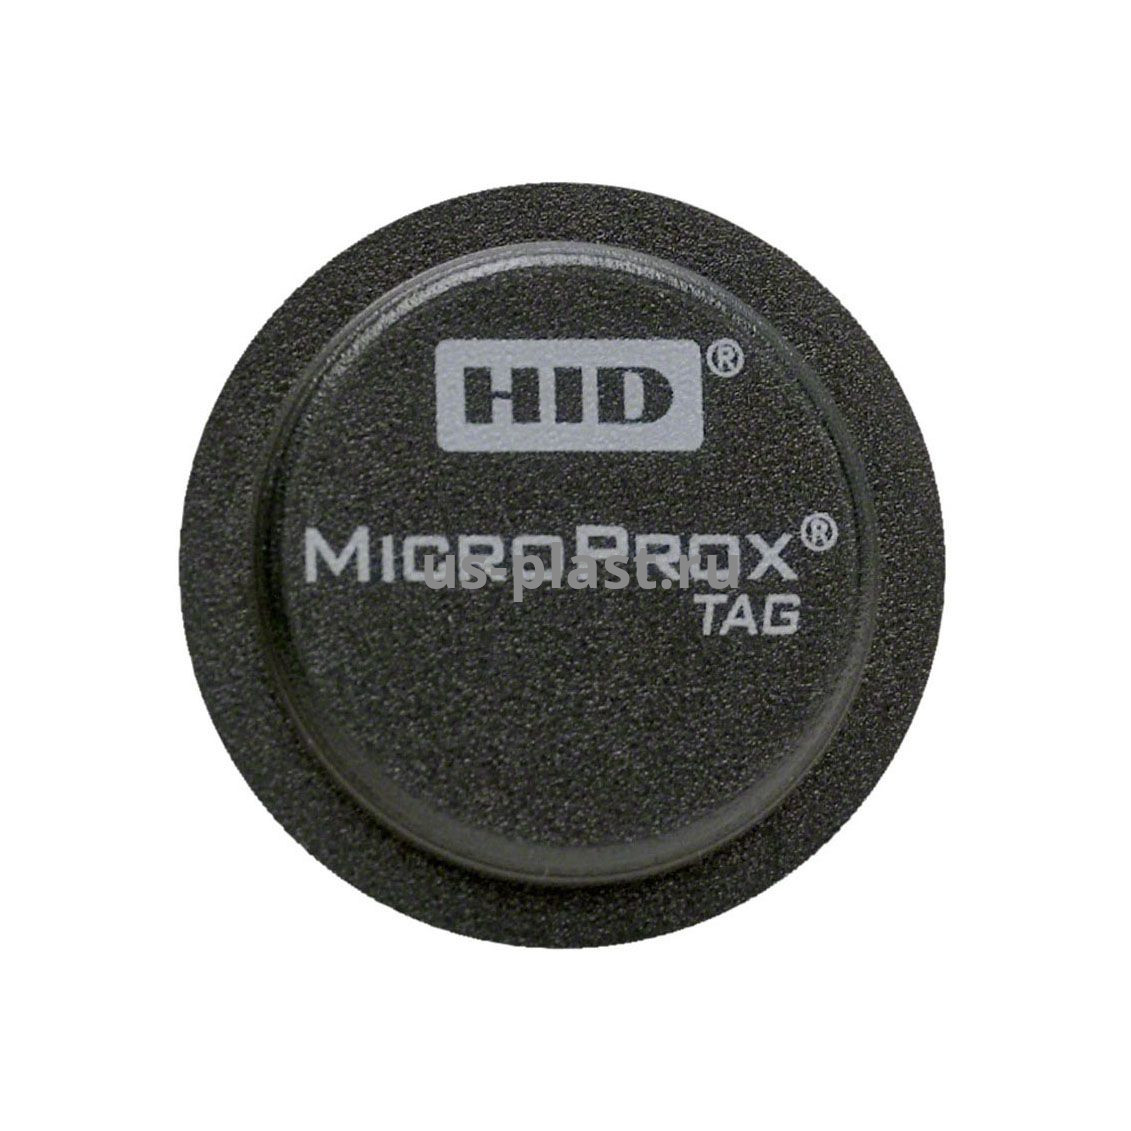 Метка HID MicroProx Tag 1391